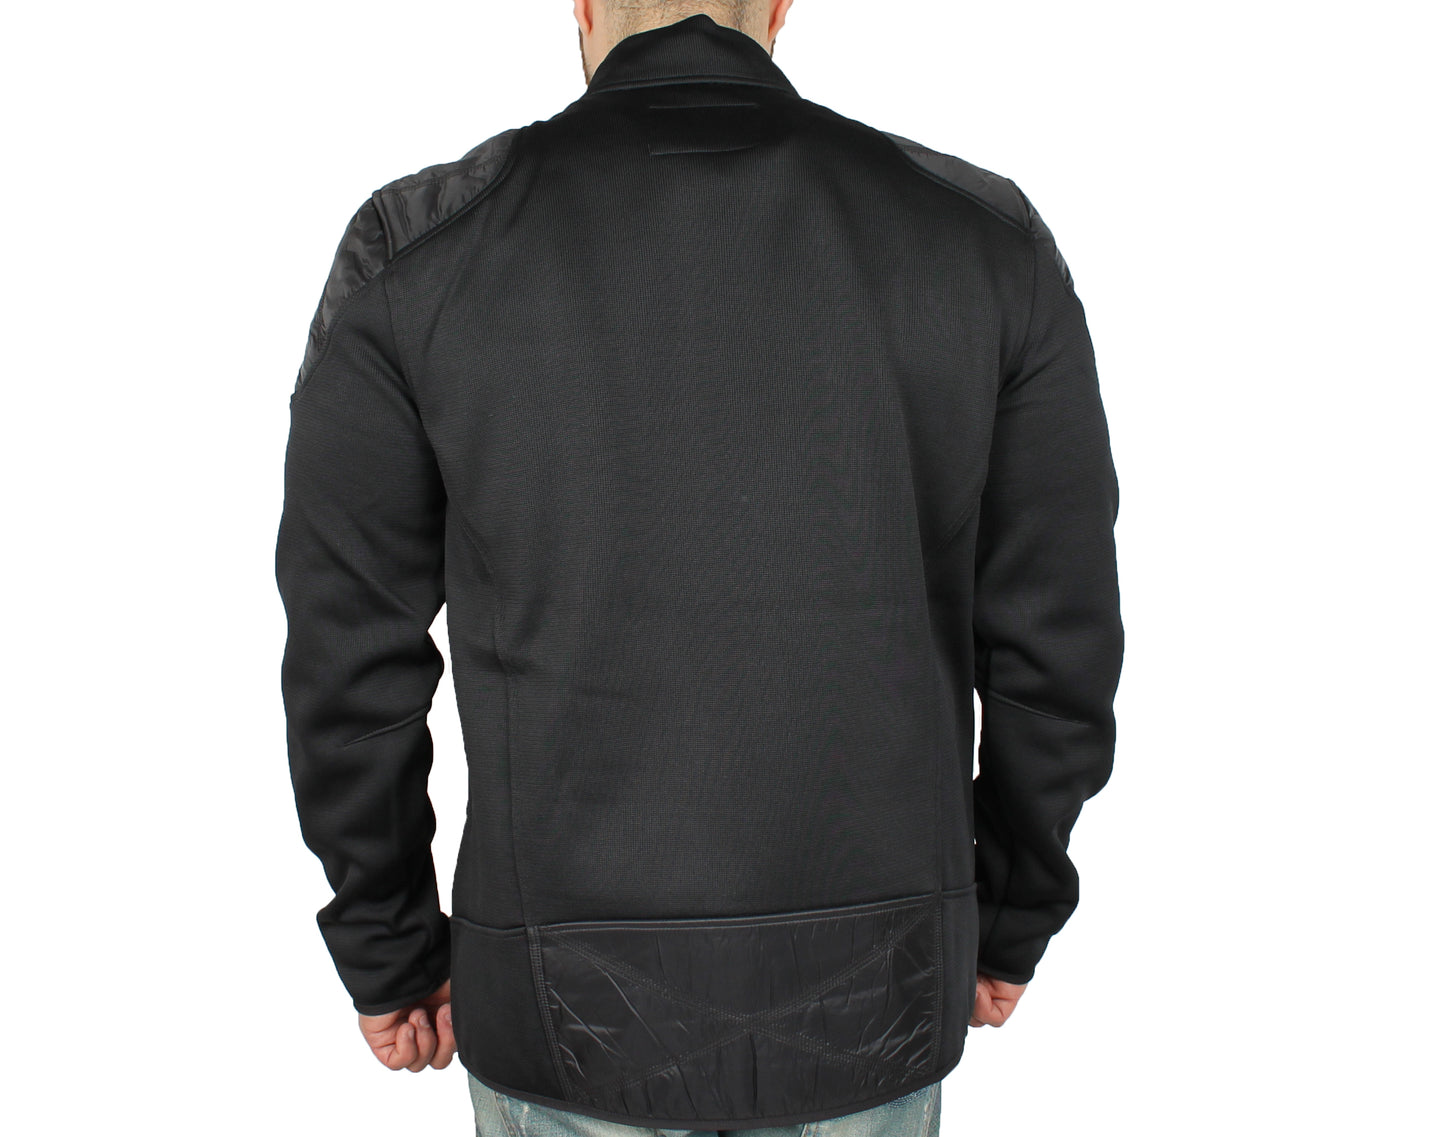 Spyder Slider Full Zip Black Men's Jacket 158022-001